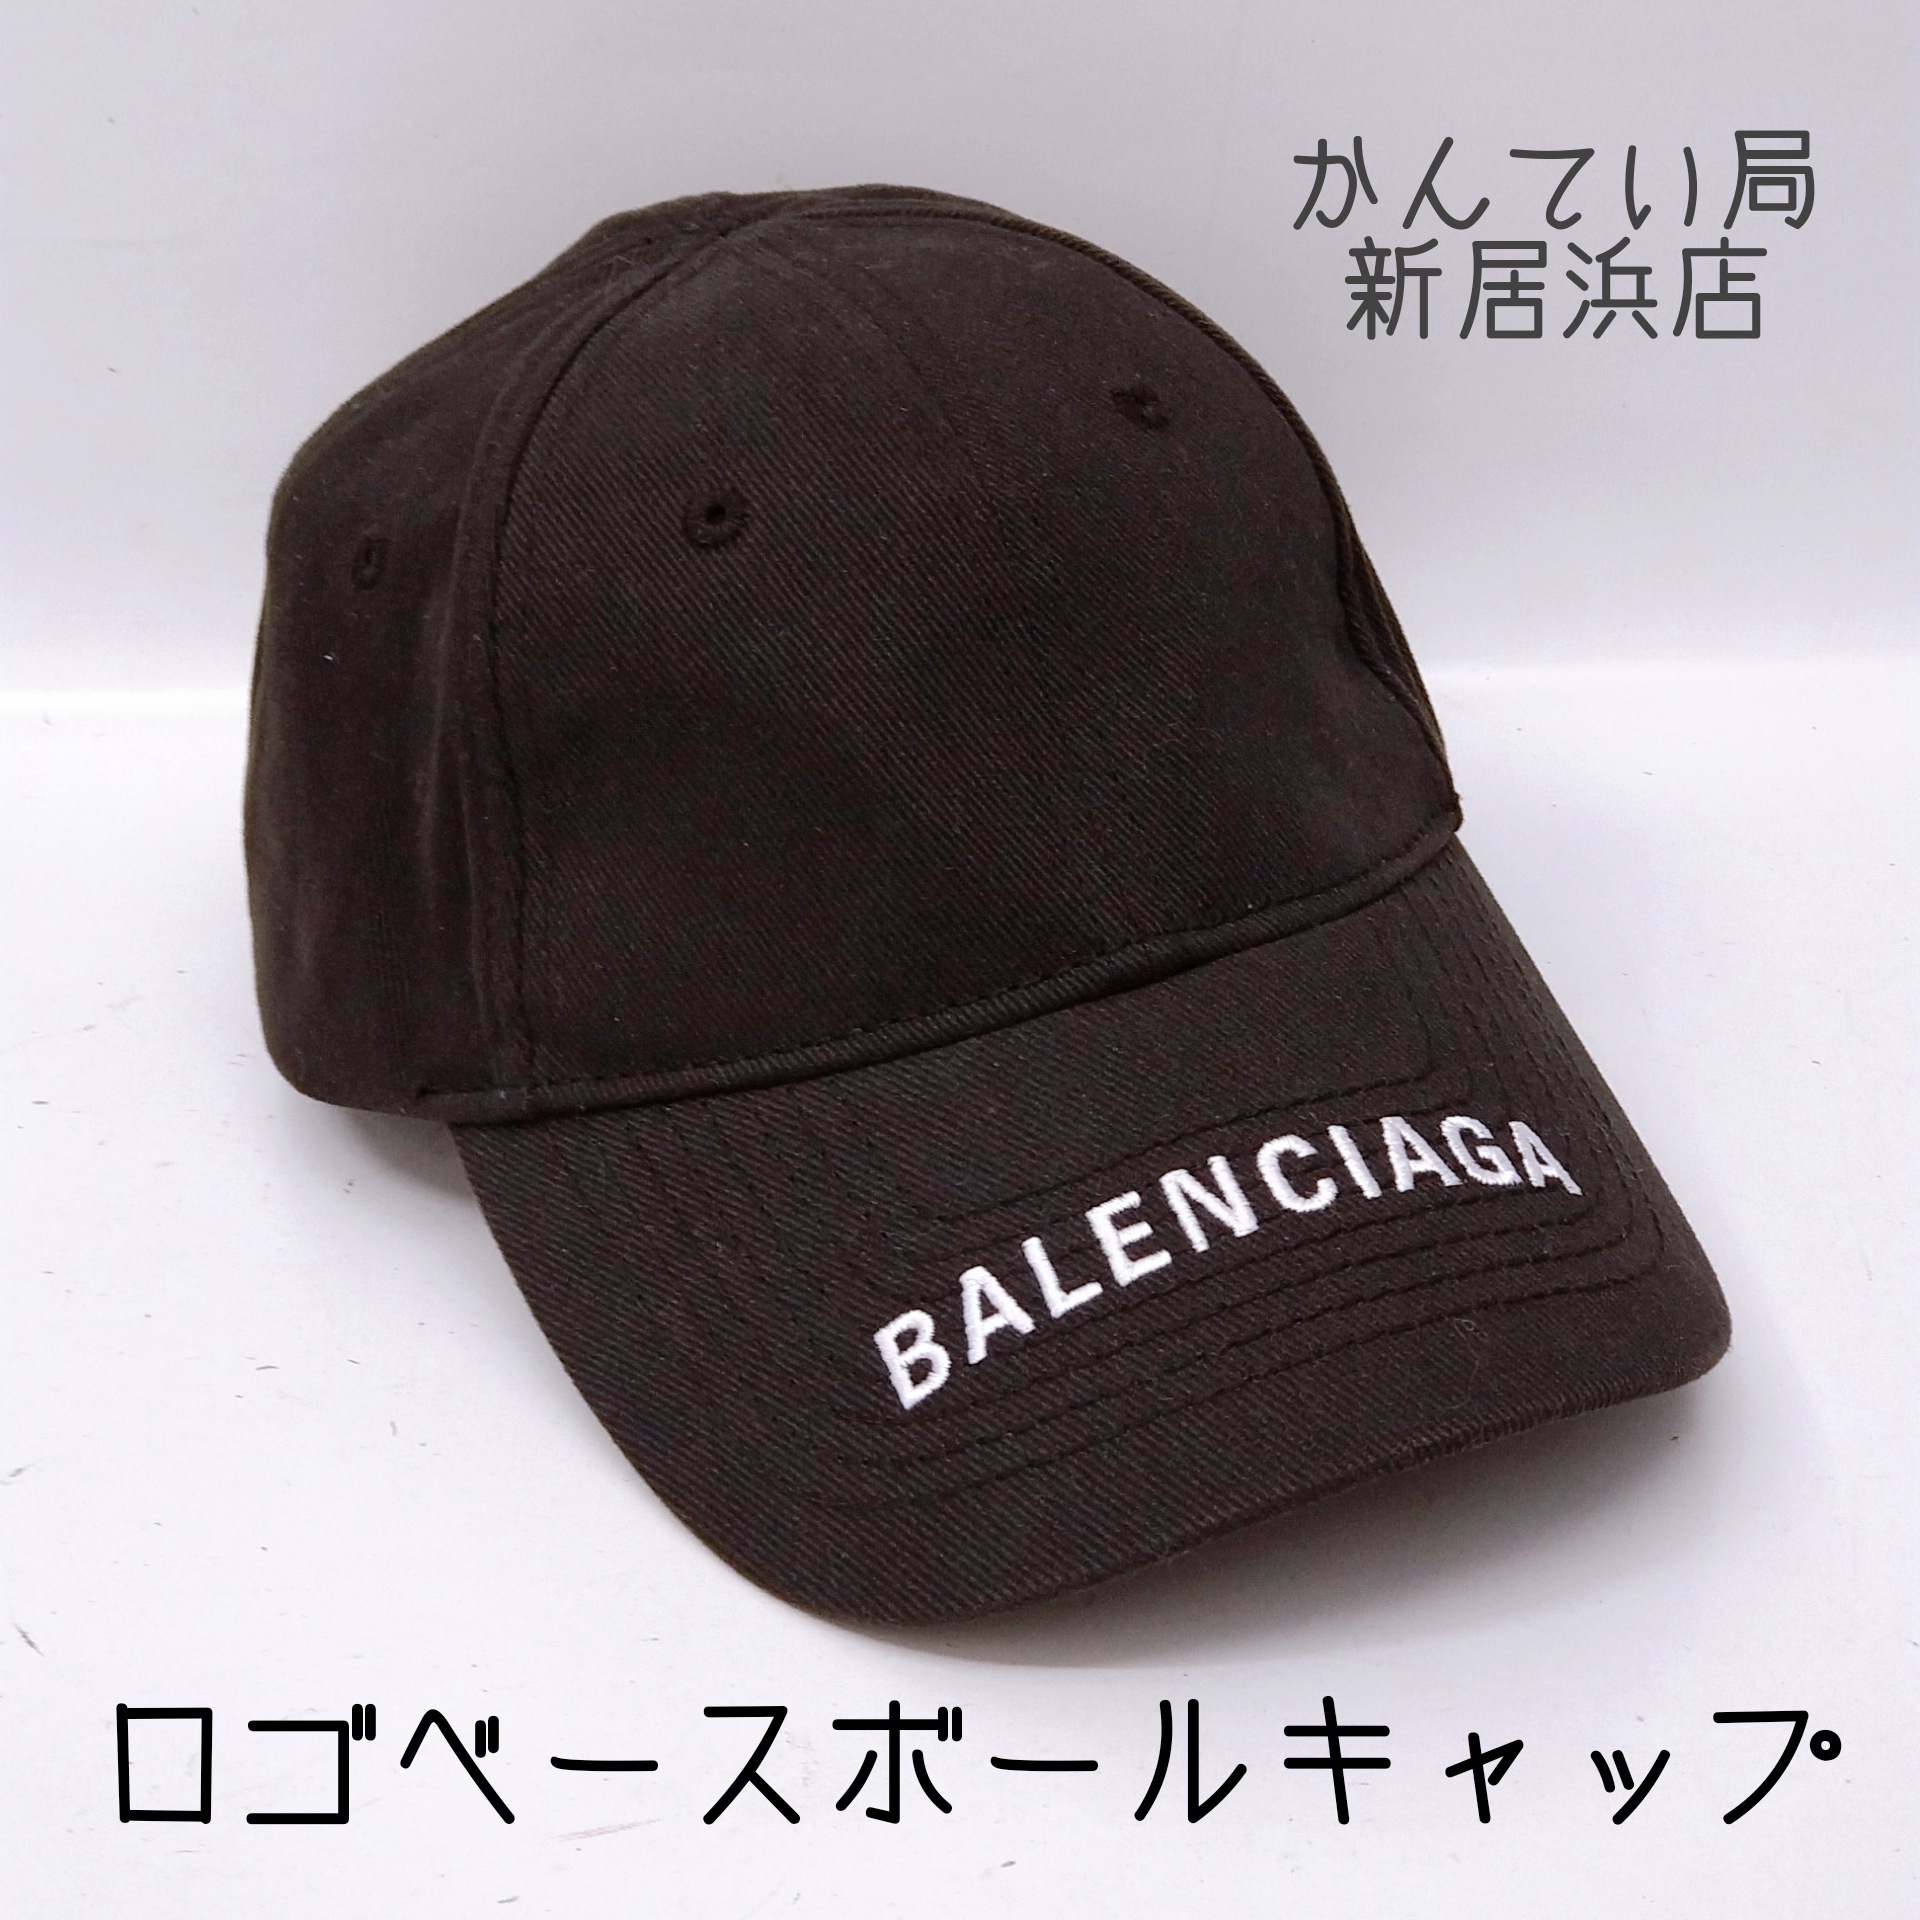 激安セール Balenciaga Balenciagaバレンシアガ ロゴ BB キャップ帽 バレンシアガ 帽子 ベースボール 577548 キャップ  帽子 楽天市場】BALENCIAGA 帽子